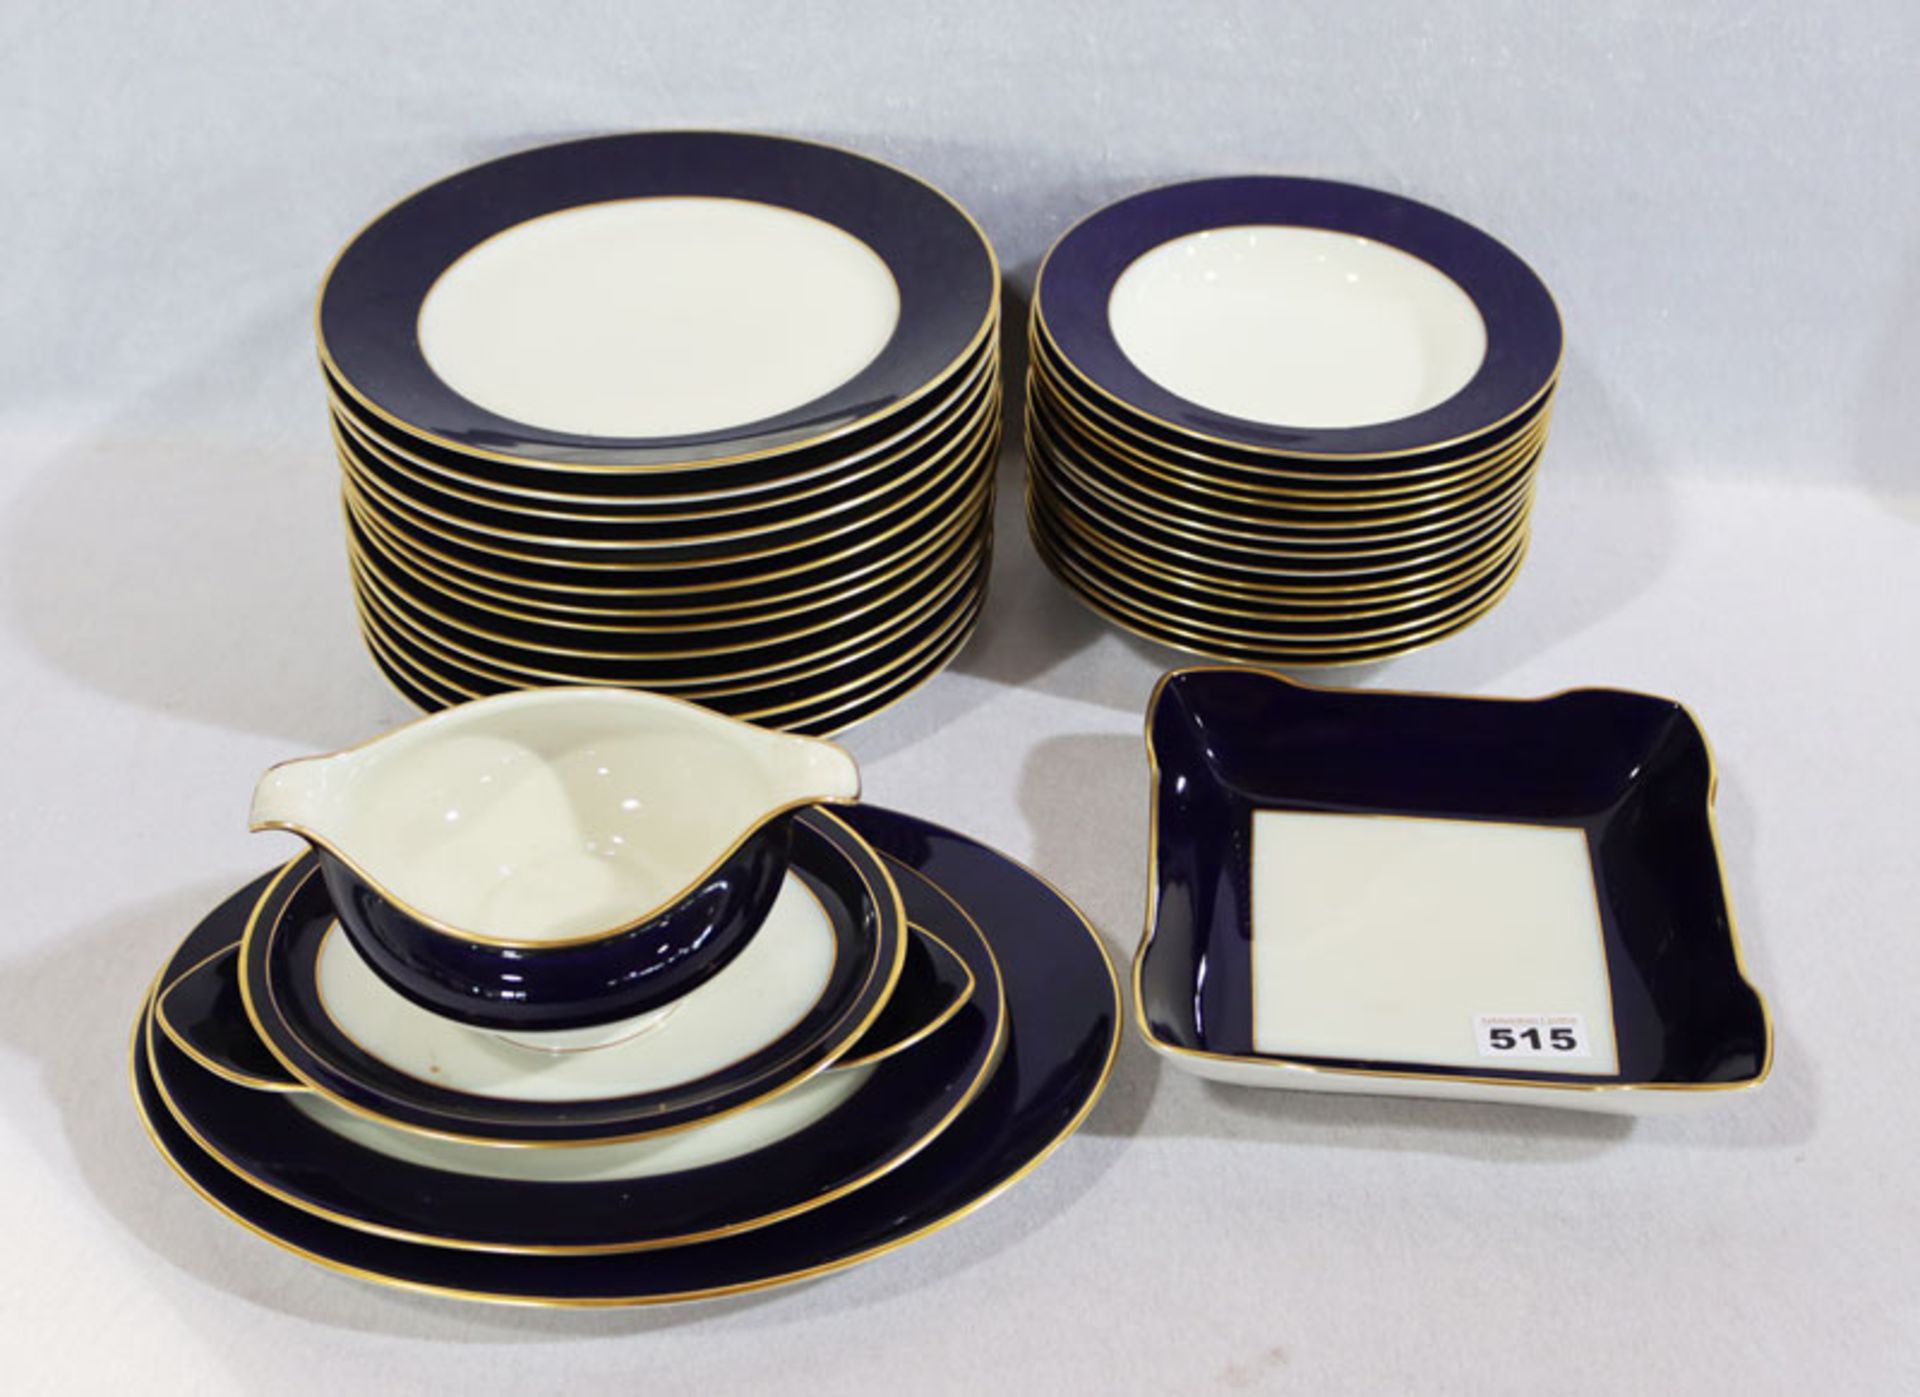 Rosenthal Speise-Serviceteile, Dekor Winifred, 14 Speiseteller, 14 Suppenteller, 2 ovale Platten,